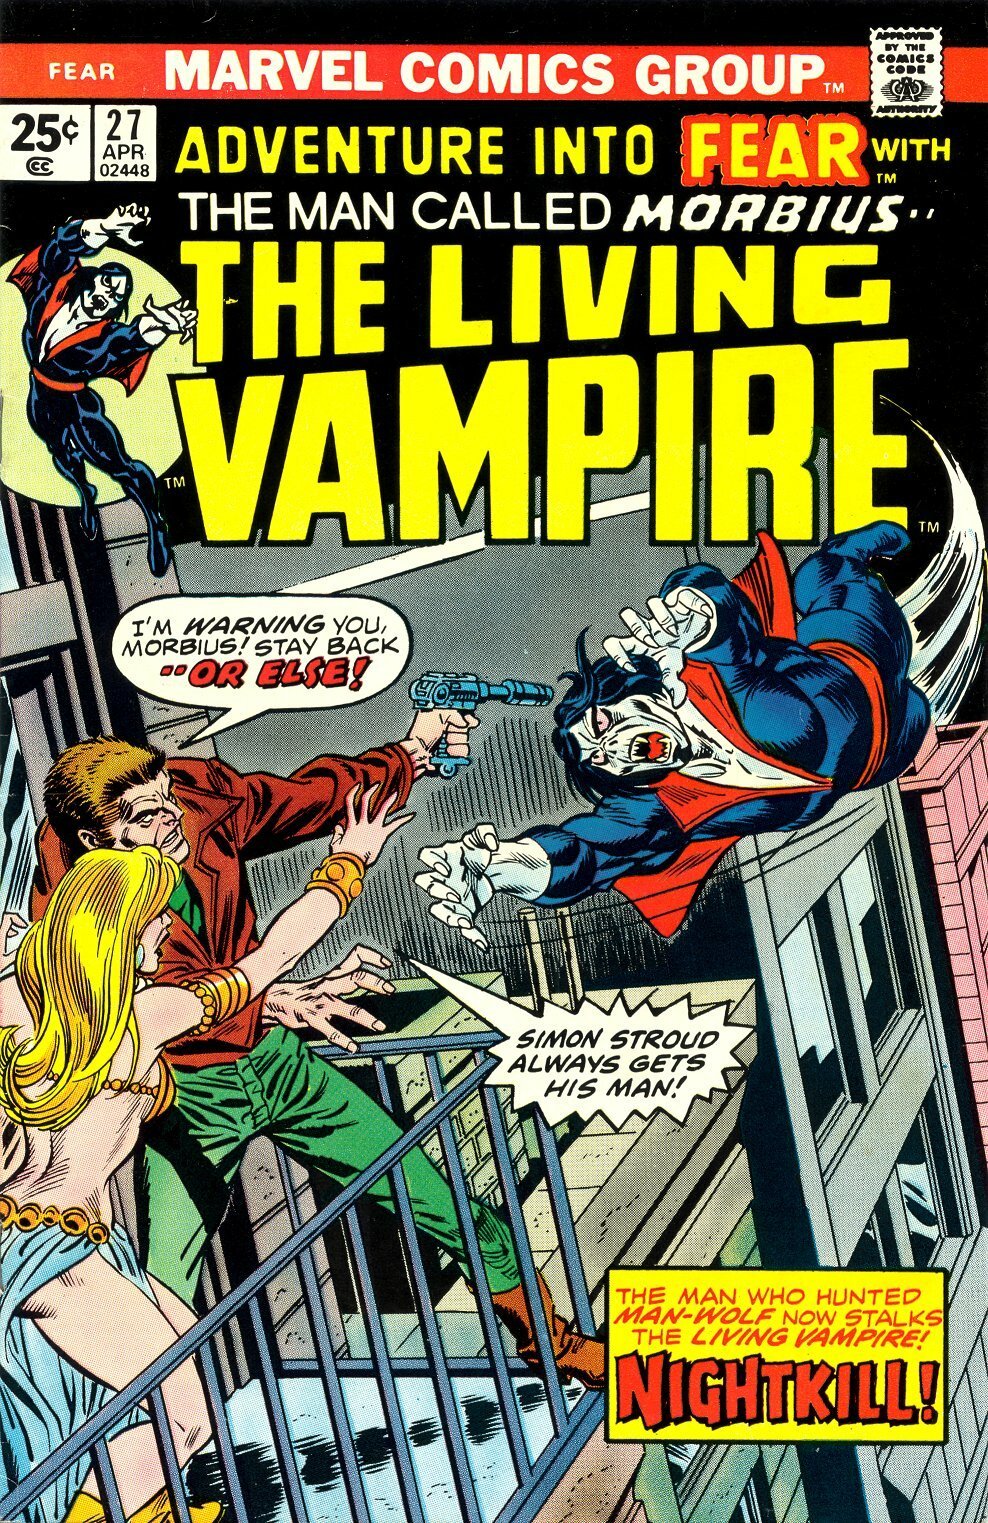 La copertina del fumetto Marvel Fear numero 27, dove Stroud e Morbius si incontrano per la prima volta